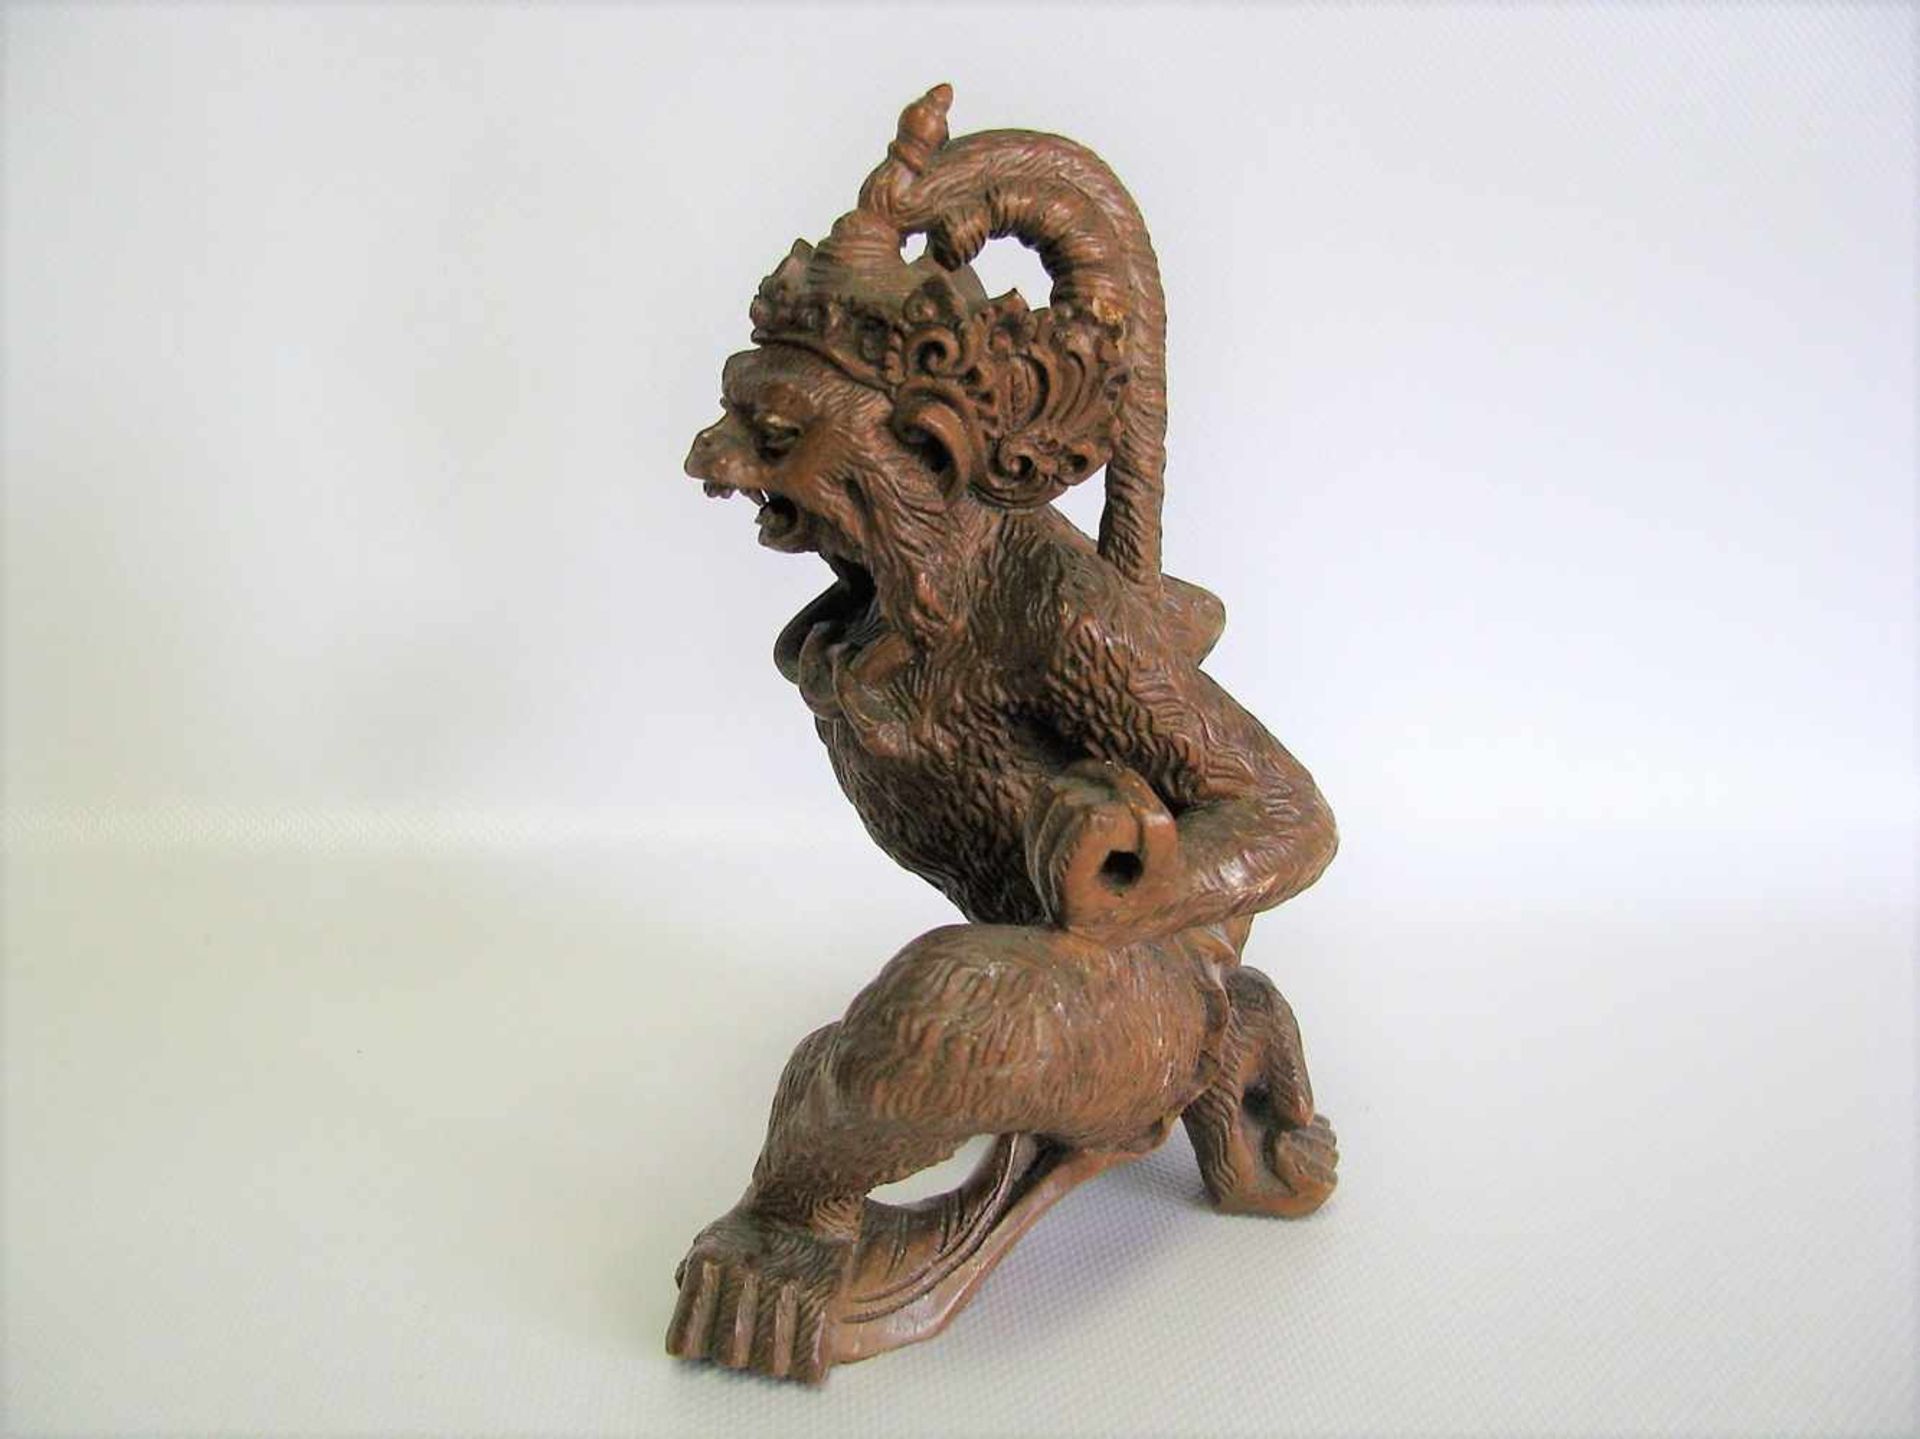 Dämonenfigur in Form eines Affen, Indonesien, wohl Bali, Holz fein beschnitzt, 18 x 15 x 13,5 cm. - Bild 2 aus 2